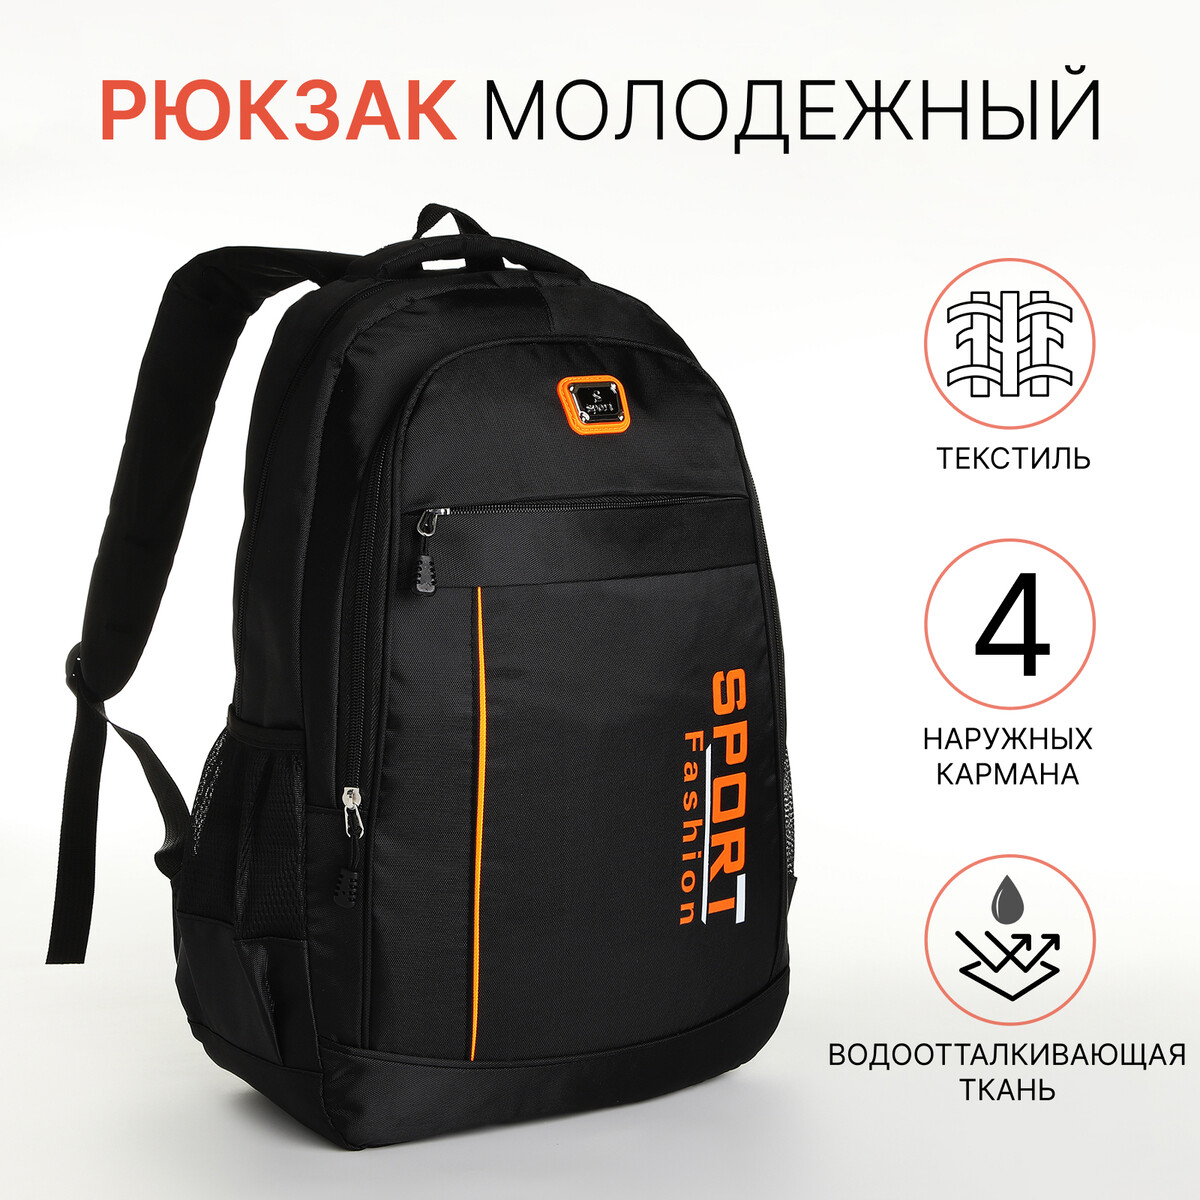 Рюкзак молодежный на молнии, 4 кармана, цвет черный/оранжевый pixel bag рюкзак с led дисплеем pixel plus orange оранжевый